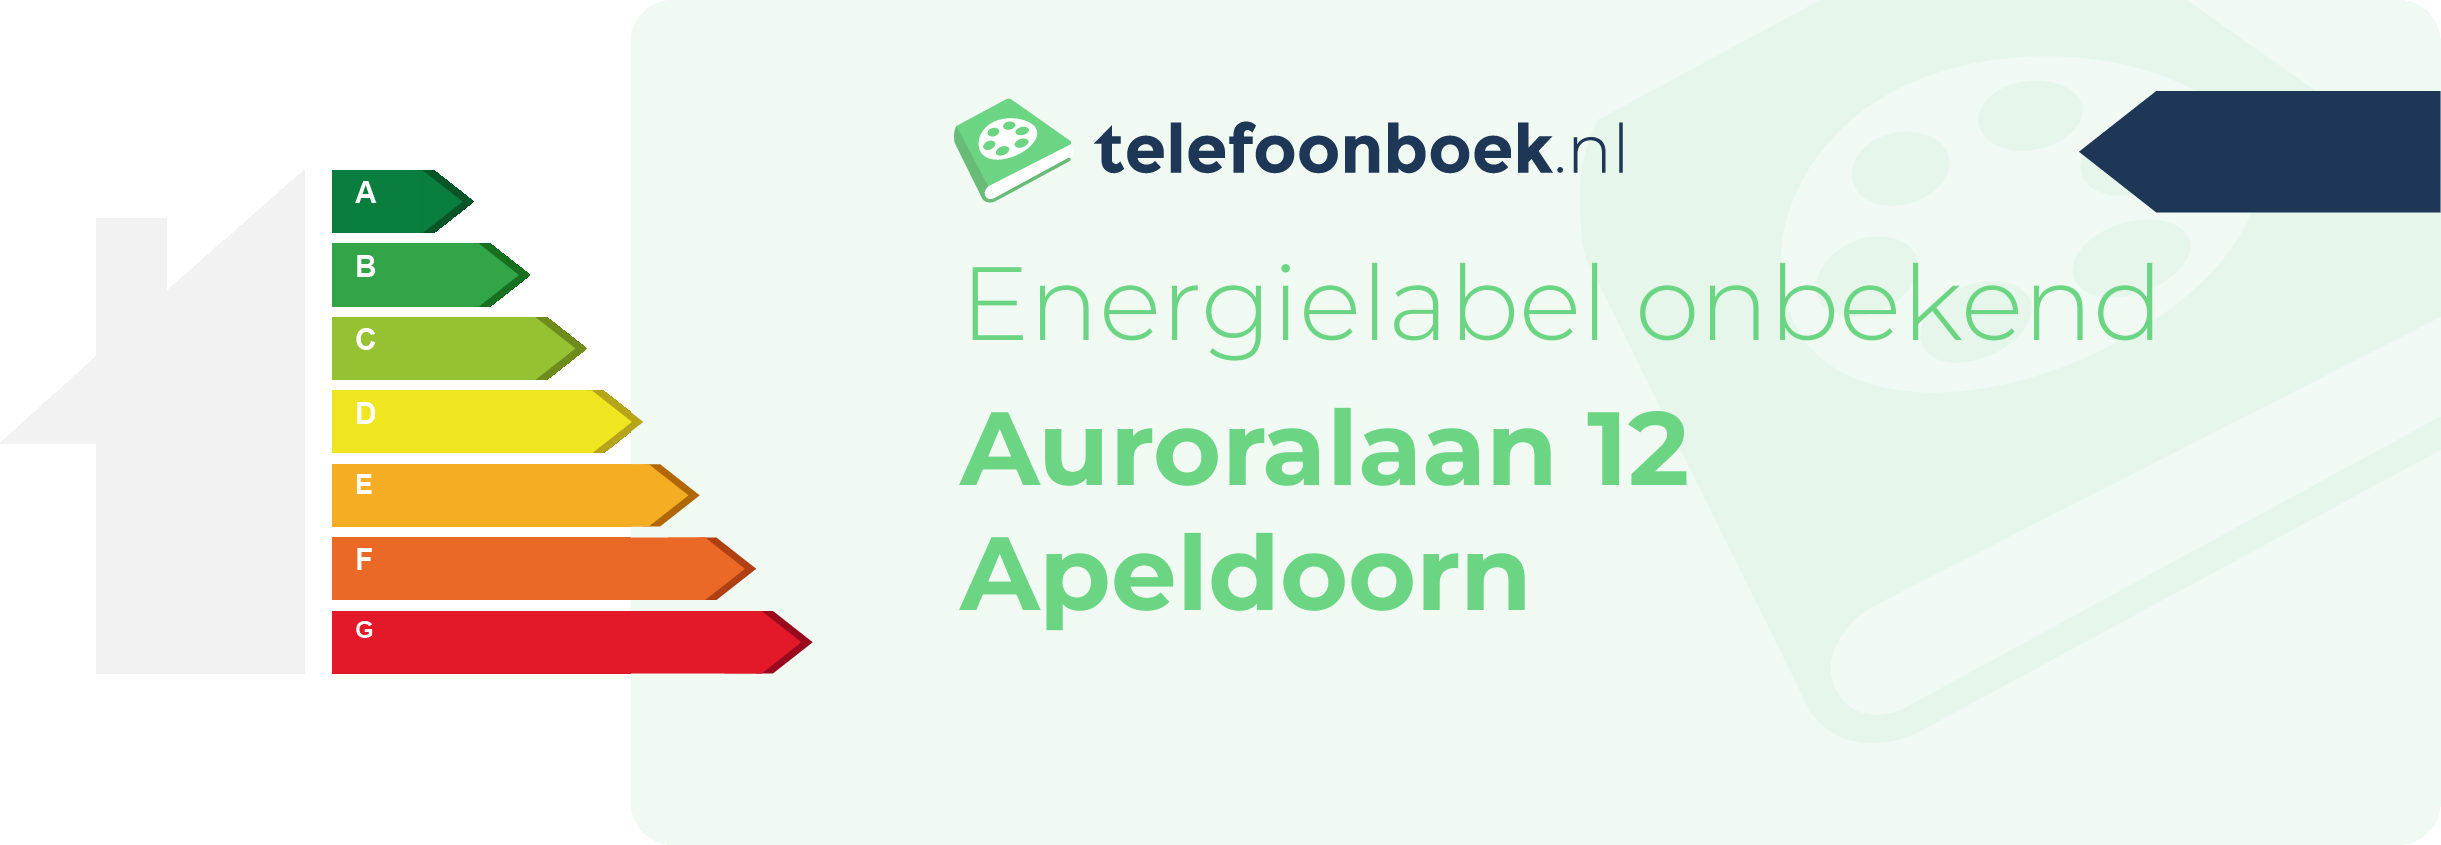 Energielabel Auroralaan 12 Apeldoorn